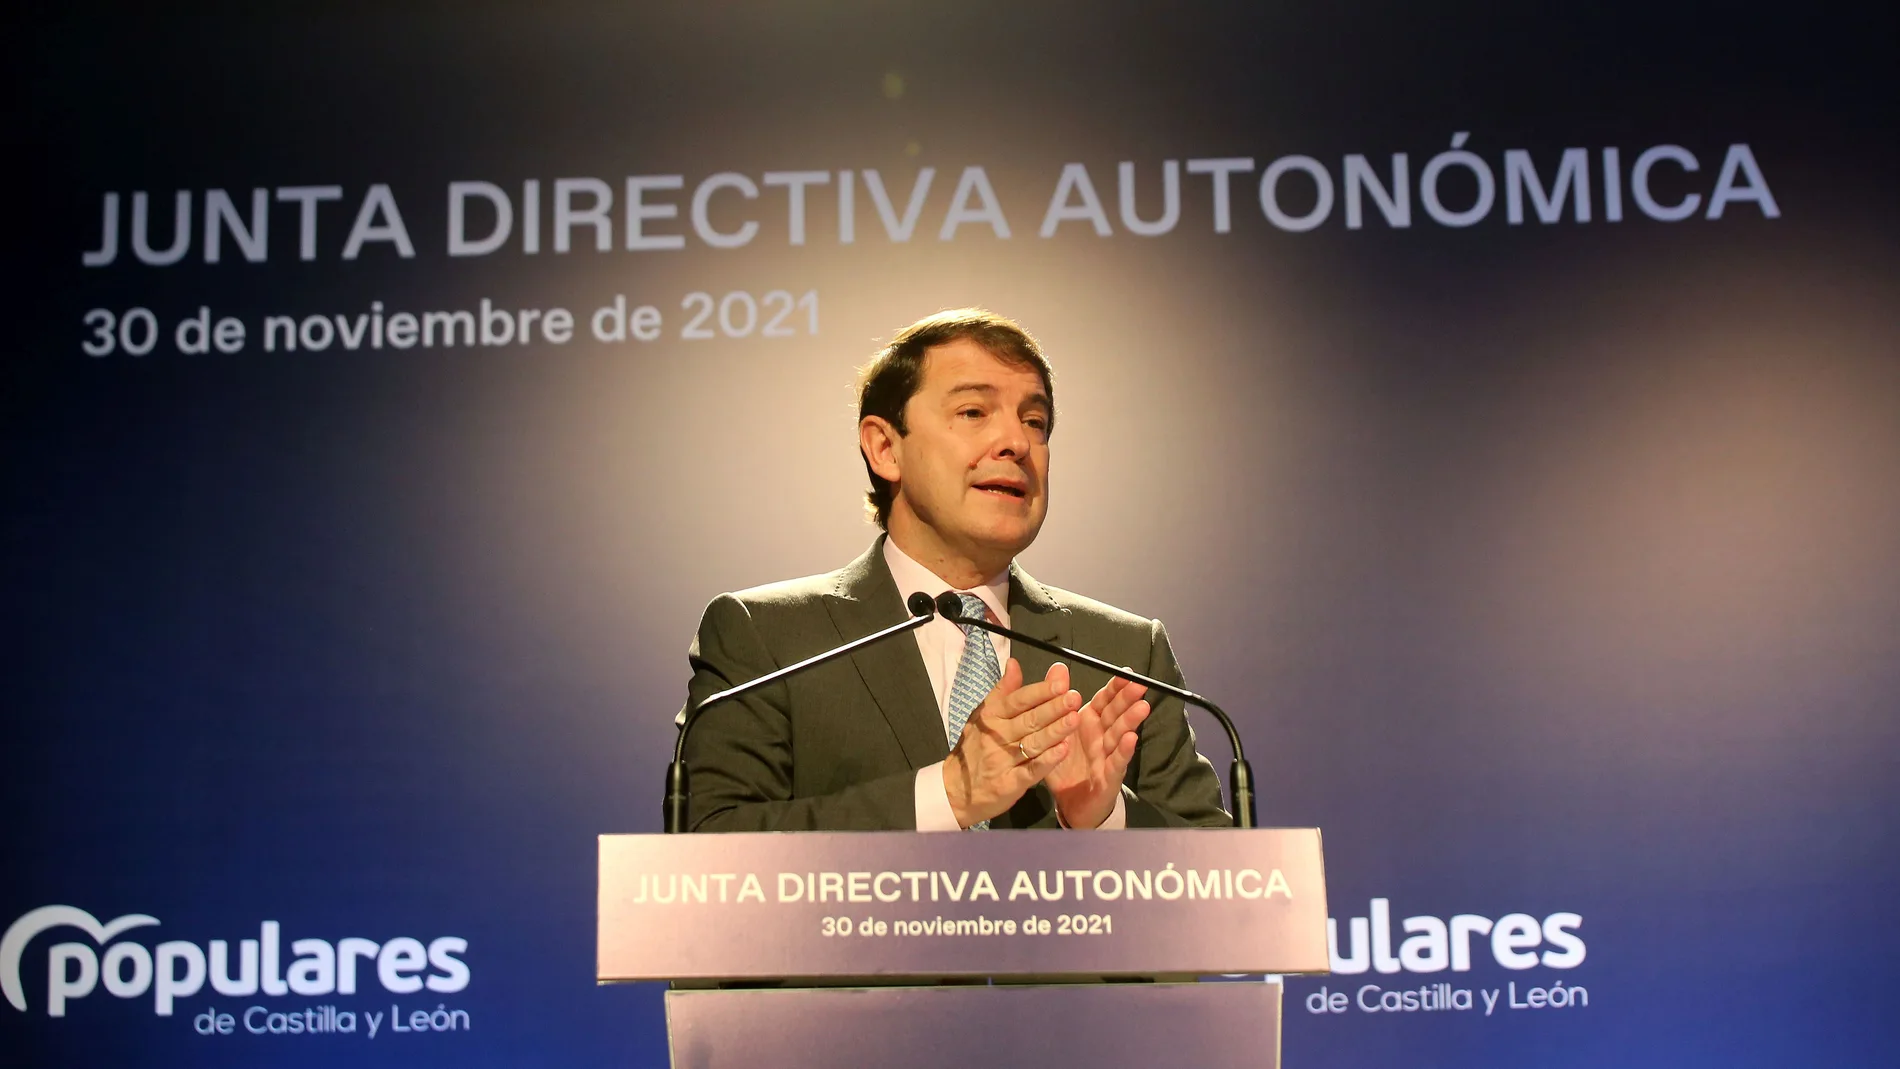 El presidente del PP de Castilla y León, Alfonso Fernández Mañueco, clausura la reunión de la Junta Directiva Autonómica